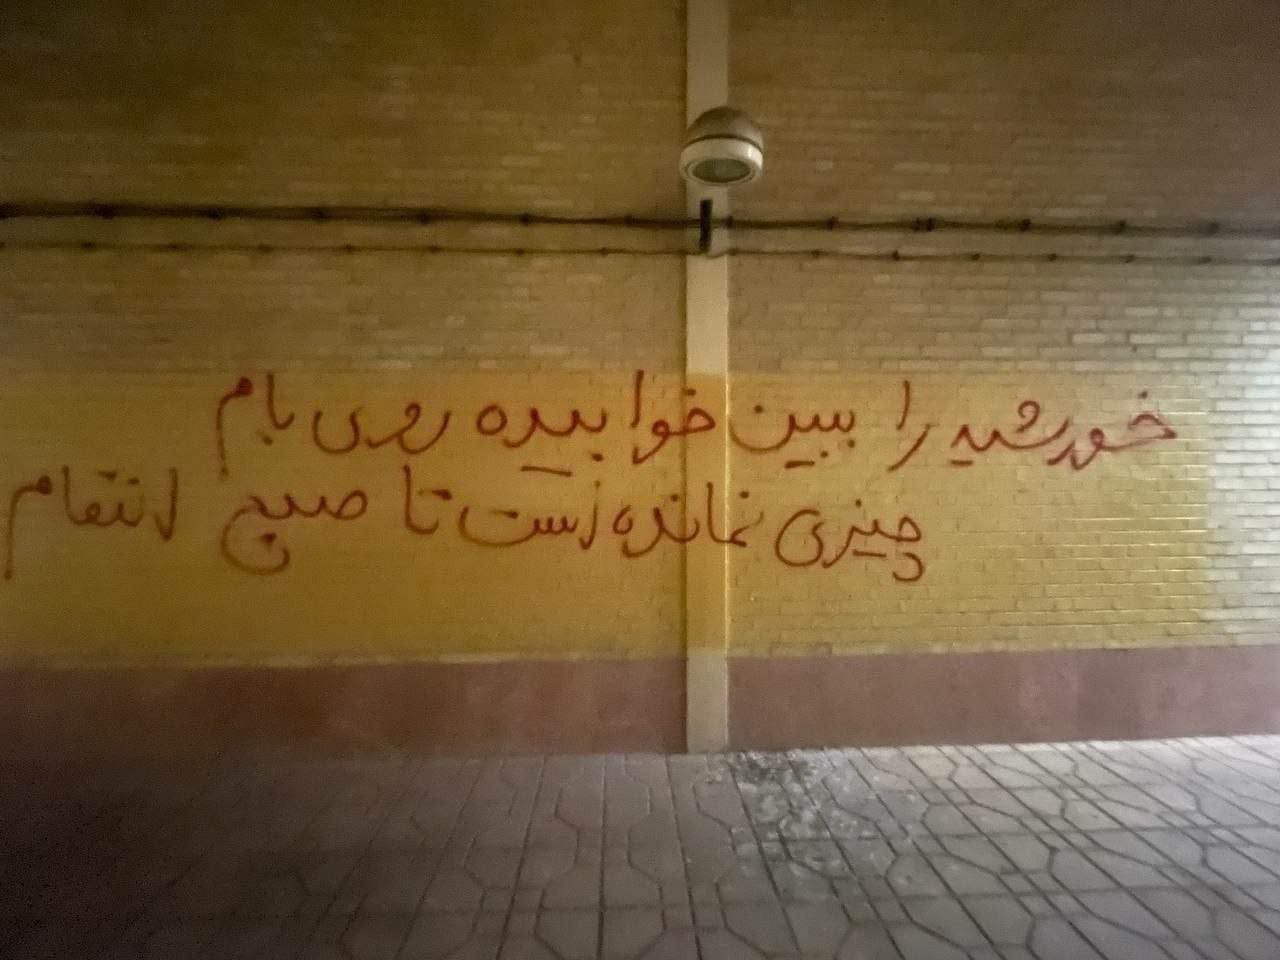 دیوارنویسی در حمایت از اعتراضات و علیه اعدام؛ خوابگاه سلامت دانشگاه علامه طباطبایی